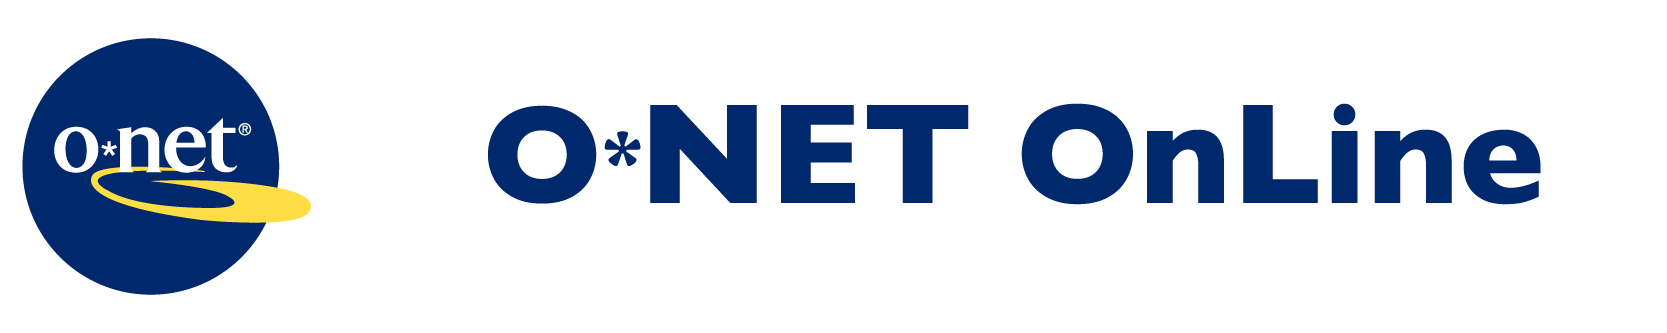 o*net Online logo